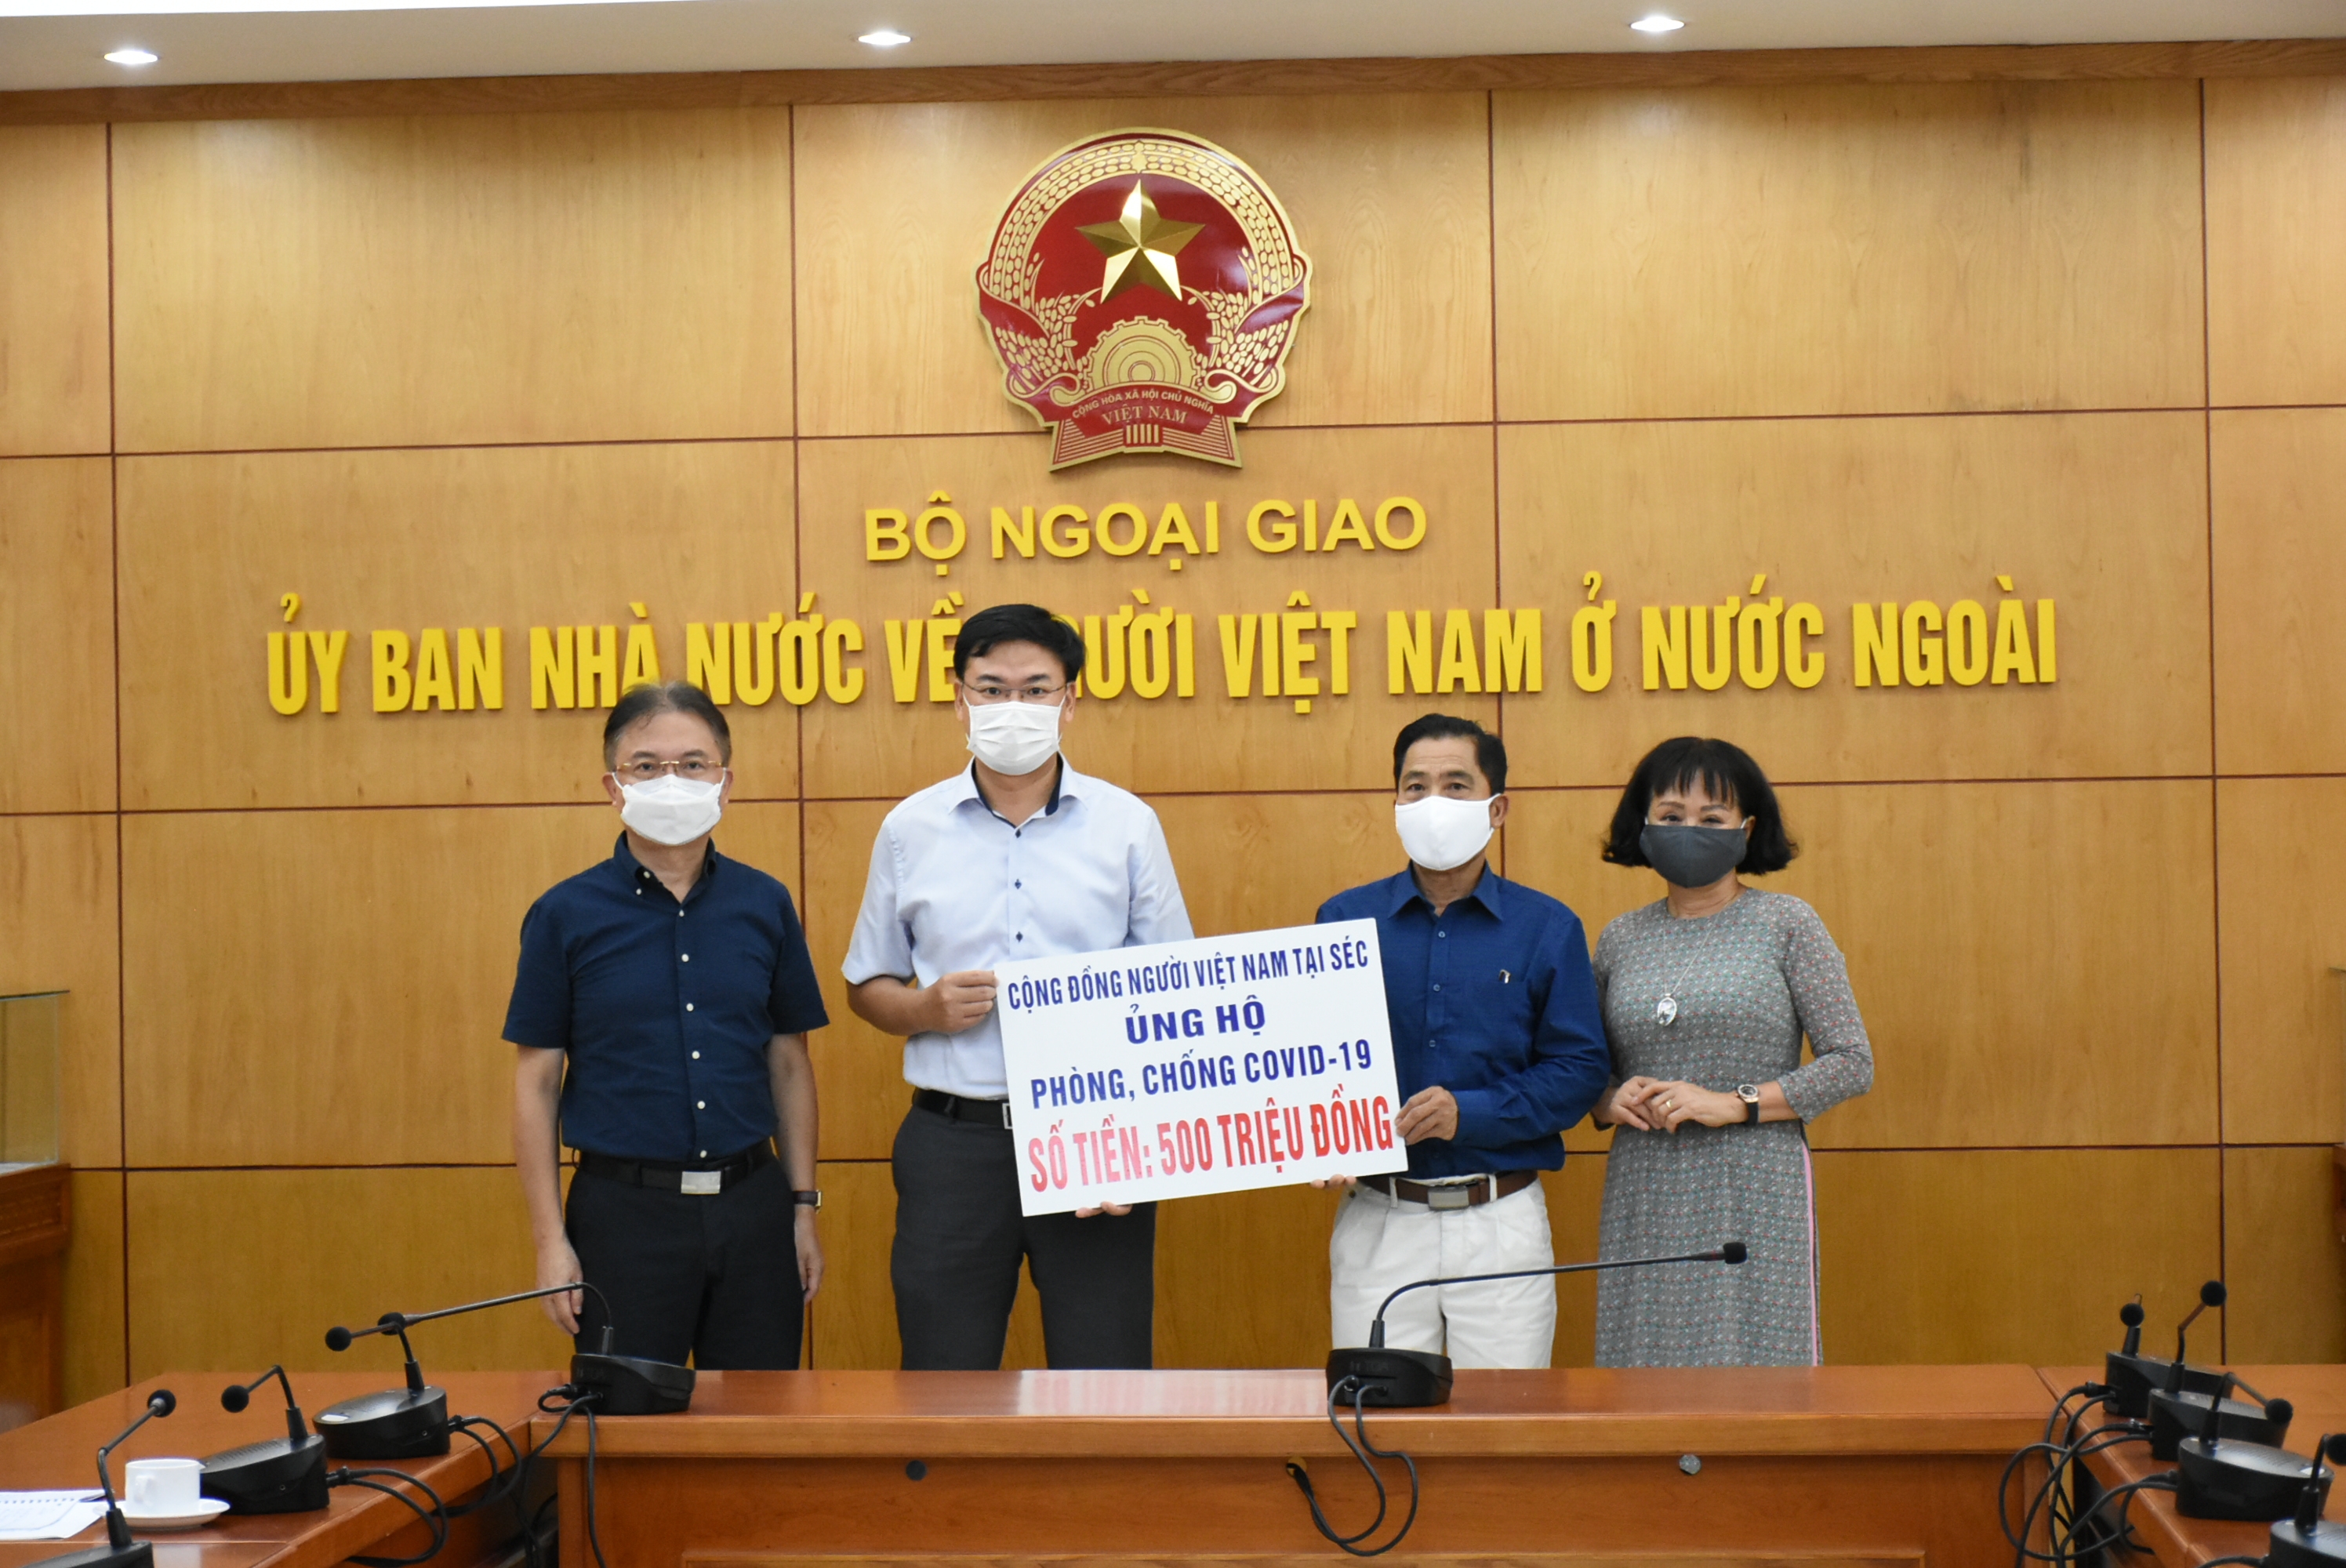 旅居捷克共和国的越南人向新冠疫苗基金会捐款